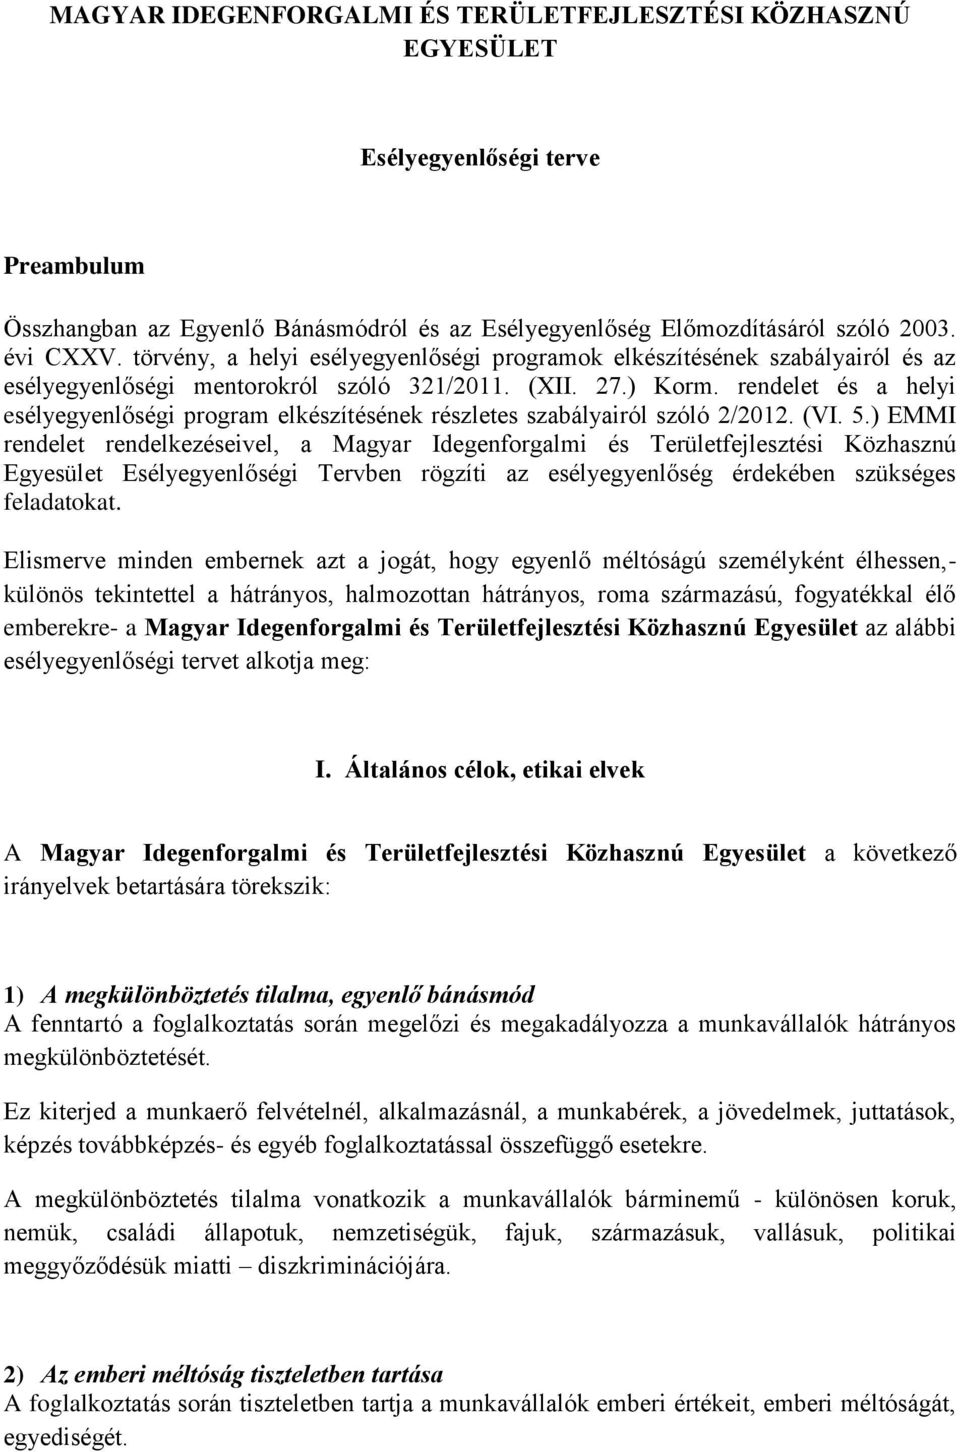 rendelet és a helyi esélyegyenlőségi program elkészítésének részletes szabályairól szóló 2/2012. (VI. 5.